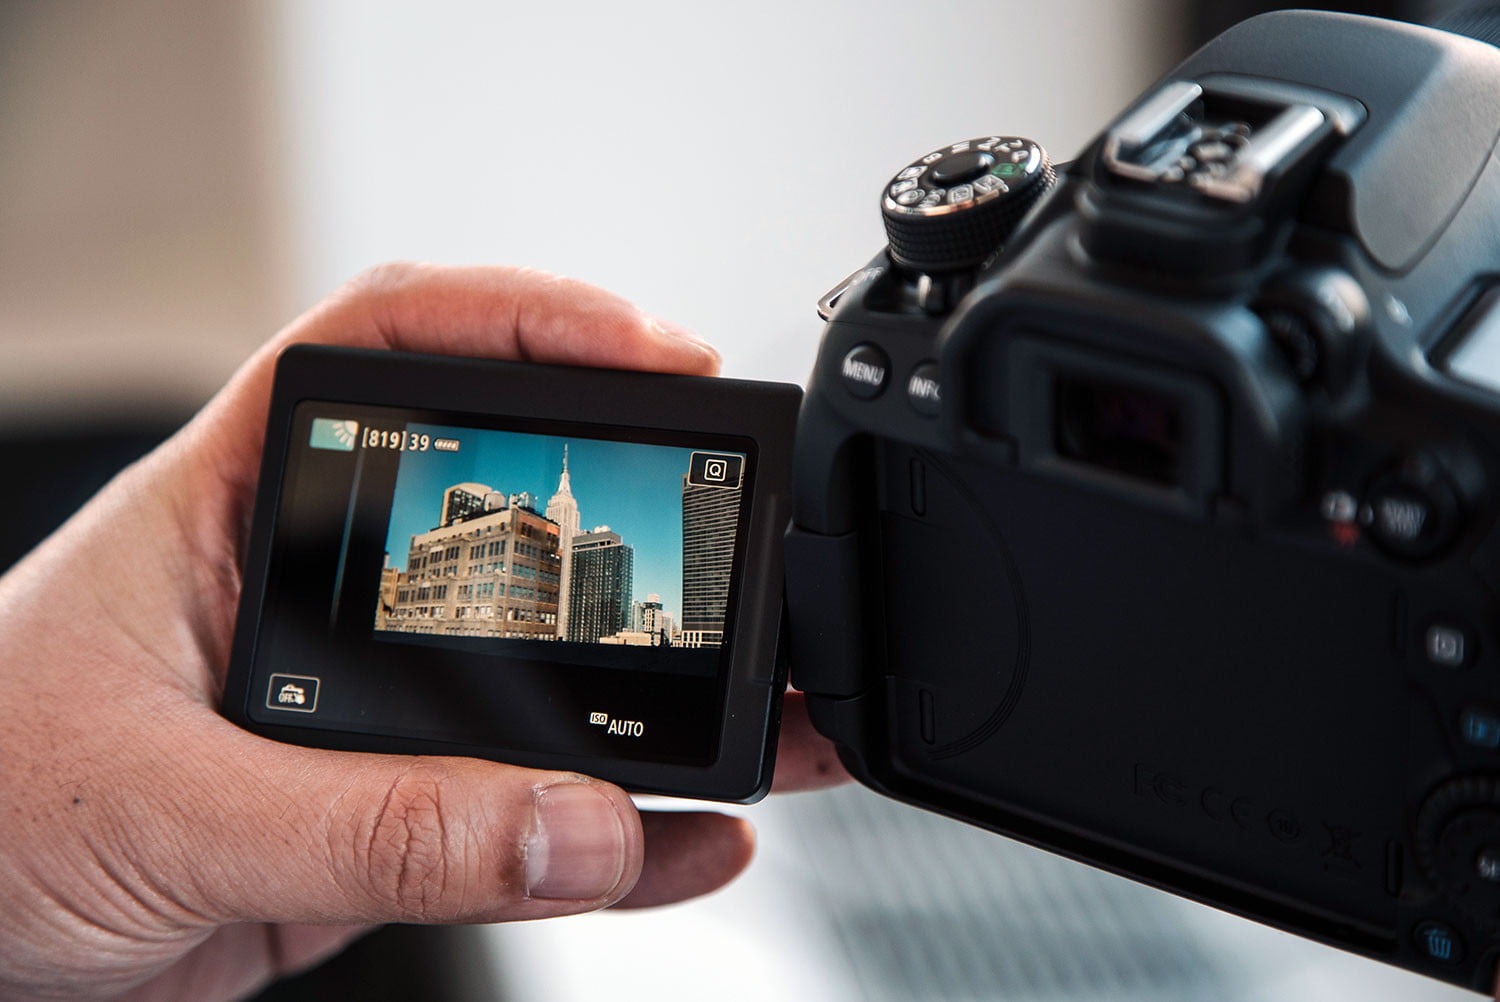 Murciélago contar repetir Las mejores cámaras DSLR para fotógrafos profesionales y aficionados |  Digital Trends Español